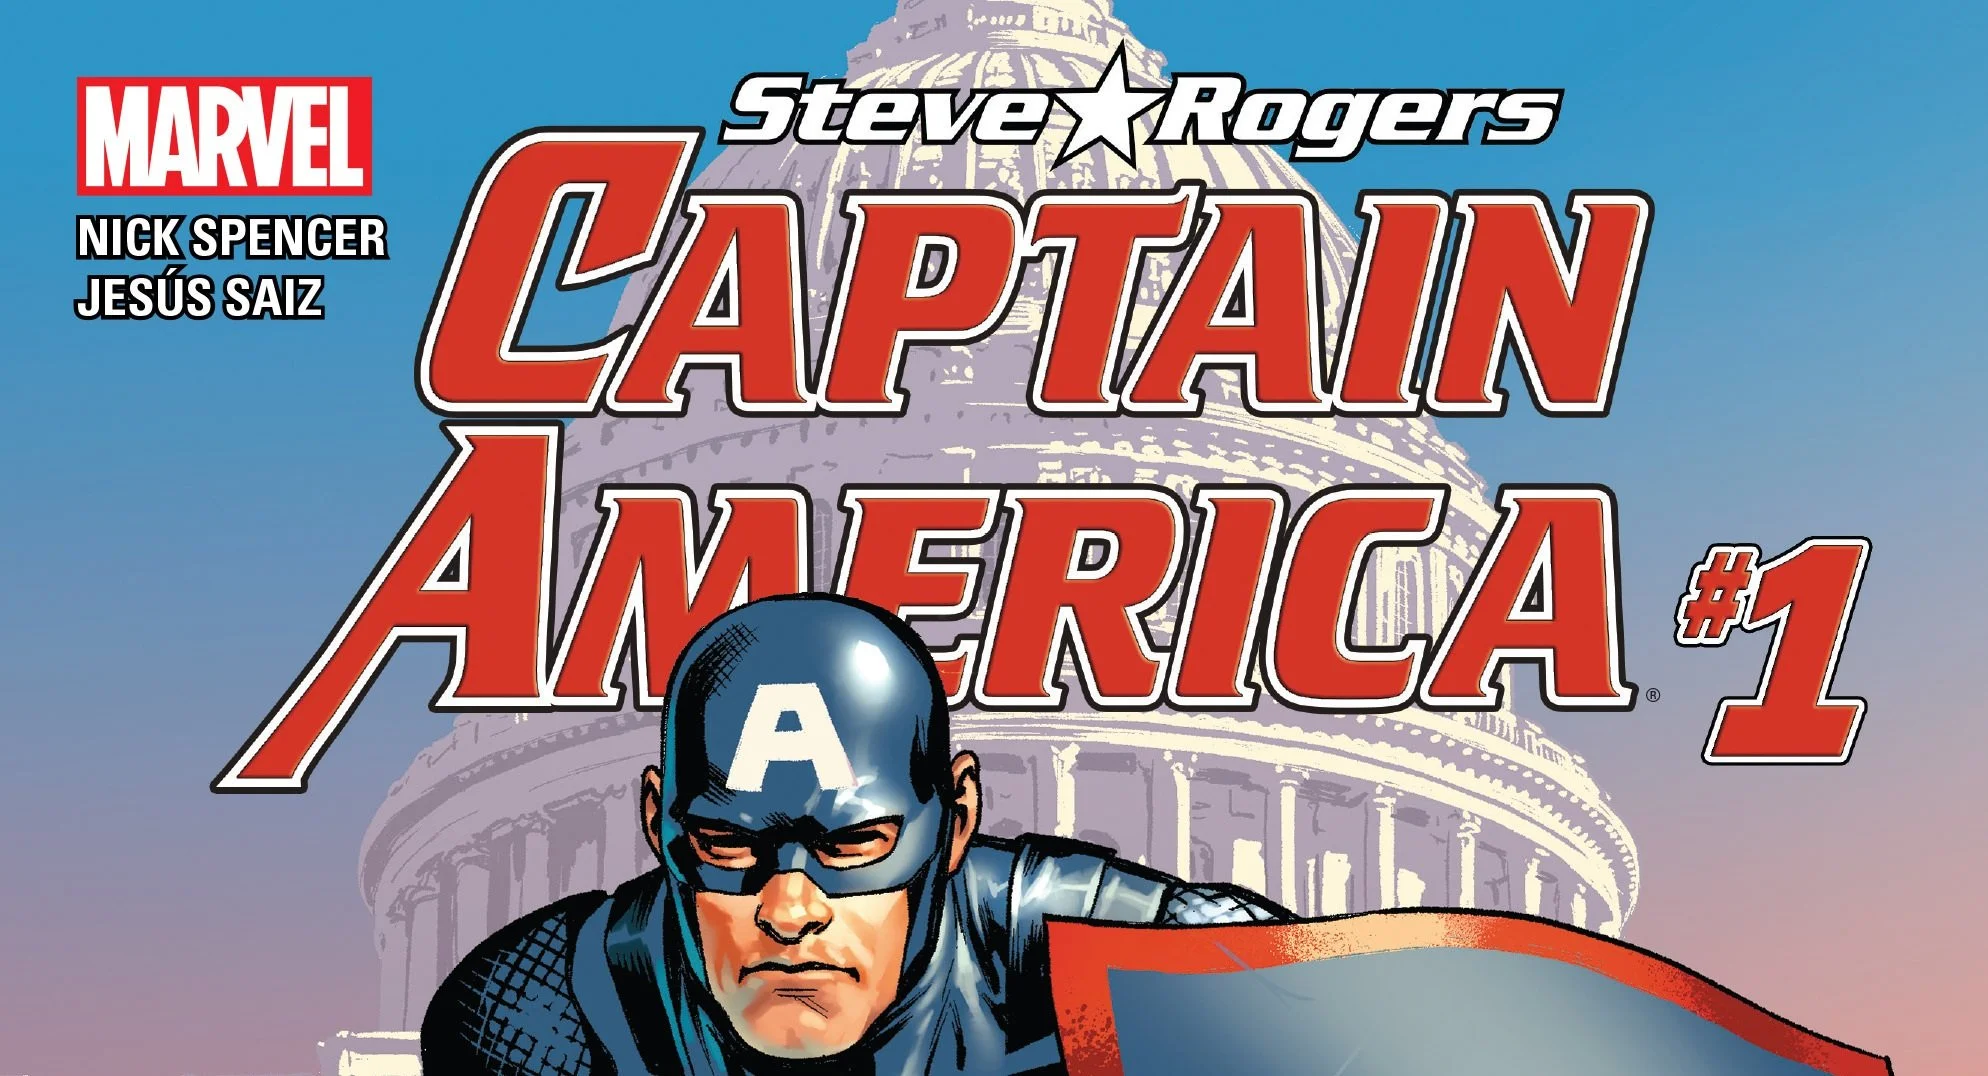 Интернет взбешен тем, что Капитан Америка оказался нацистом